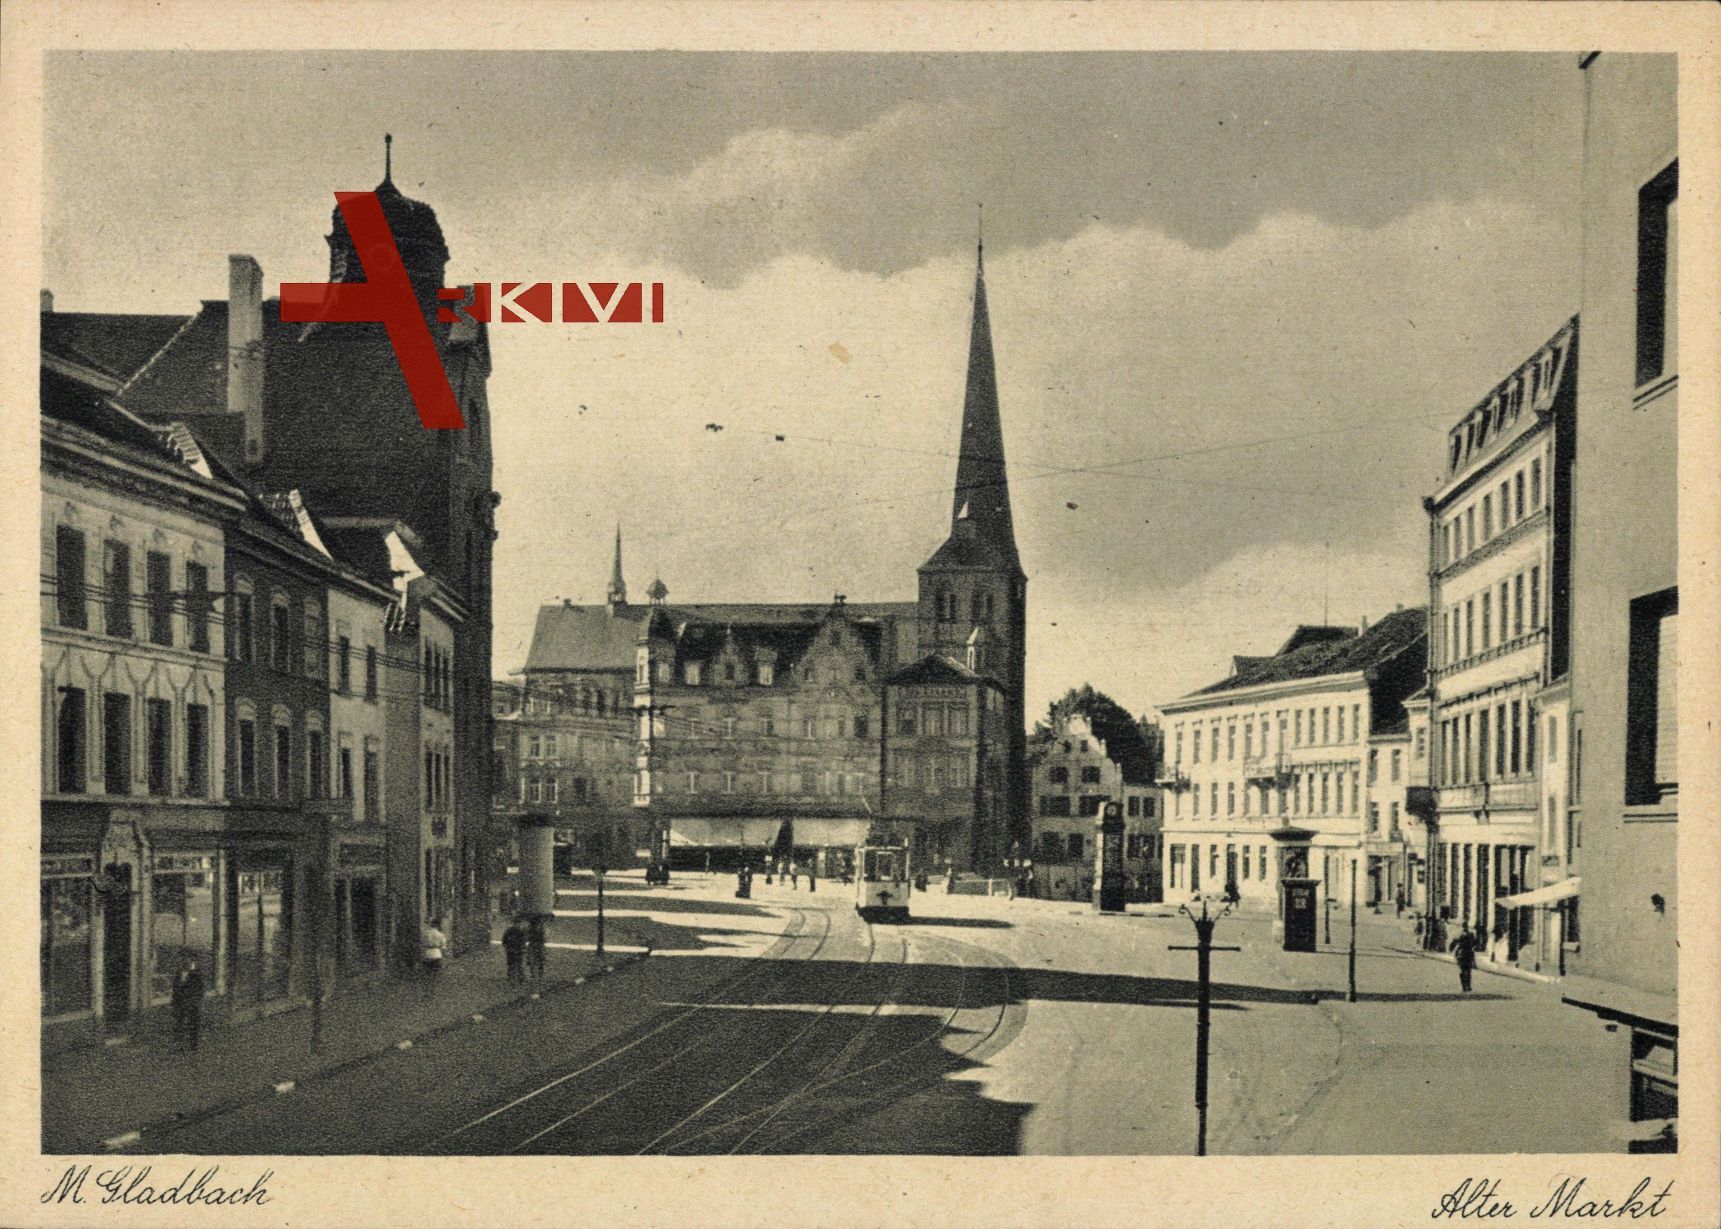 Mönchengladbach, Blick auf alten Markt, Kirche, Straßenbahn